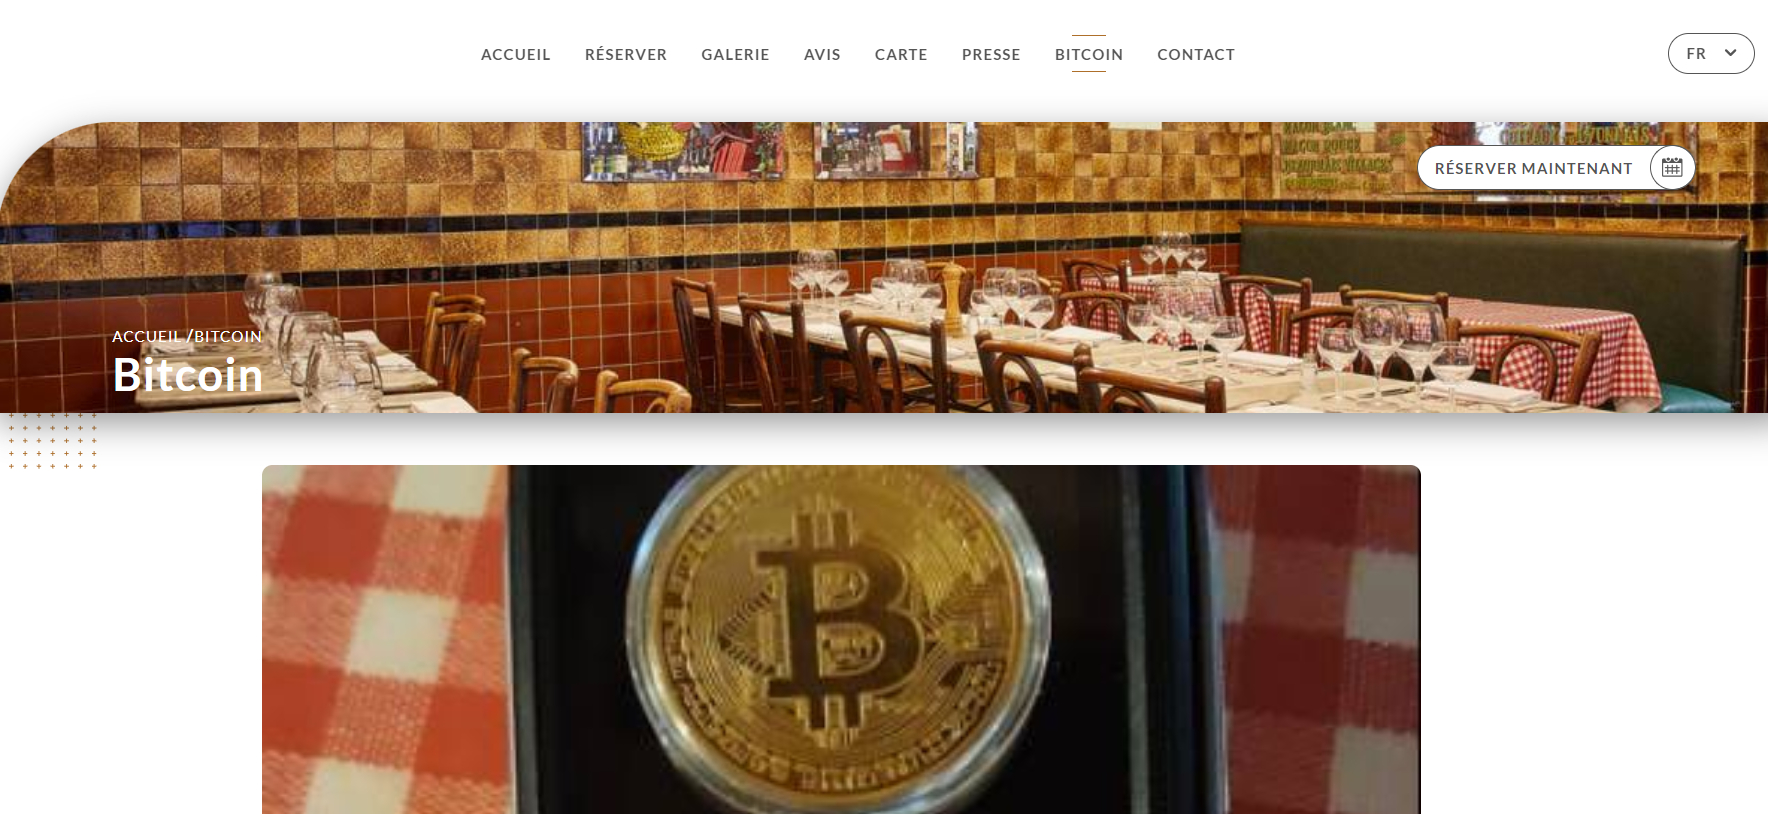 Una página dedicada a Bitcoin en el sitio web de un restaurante.